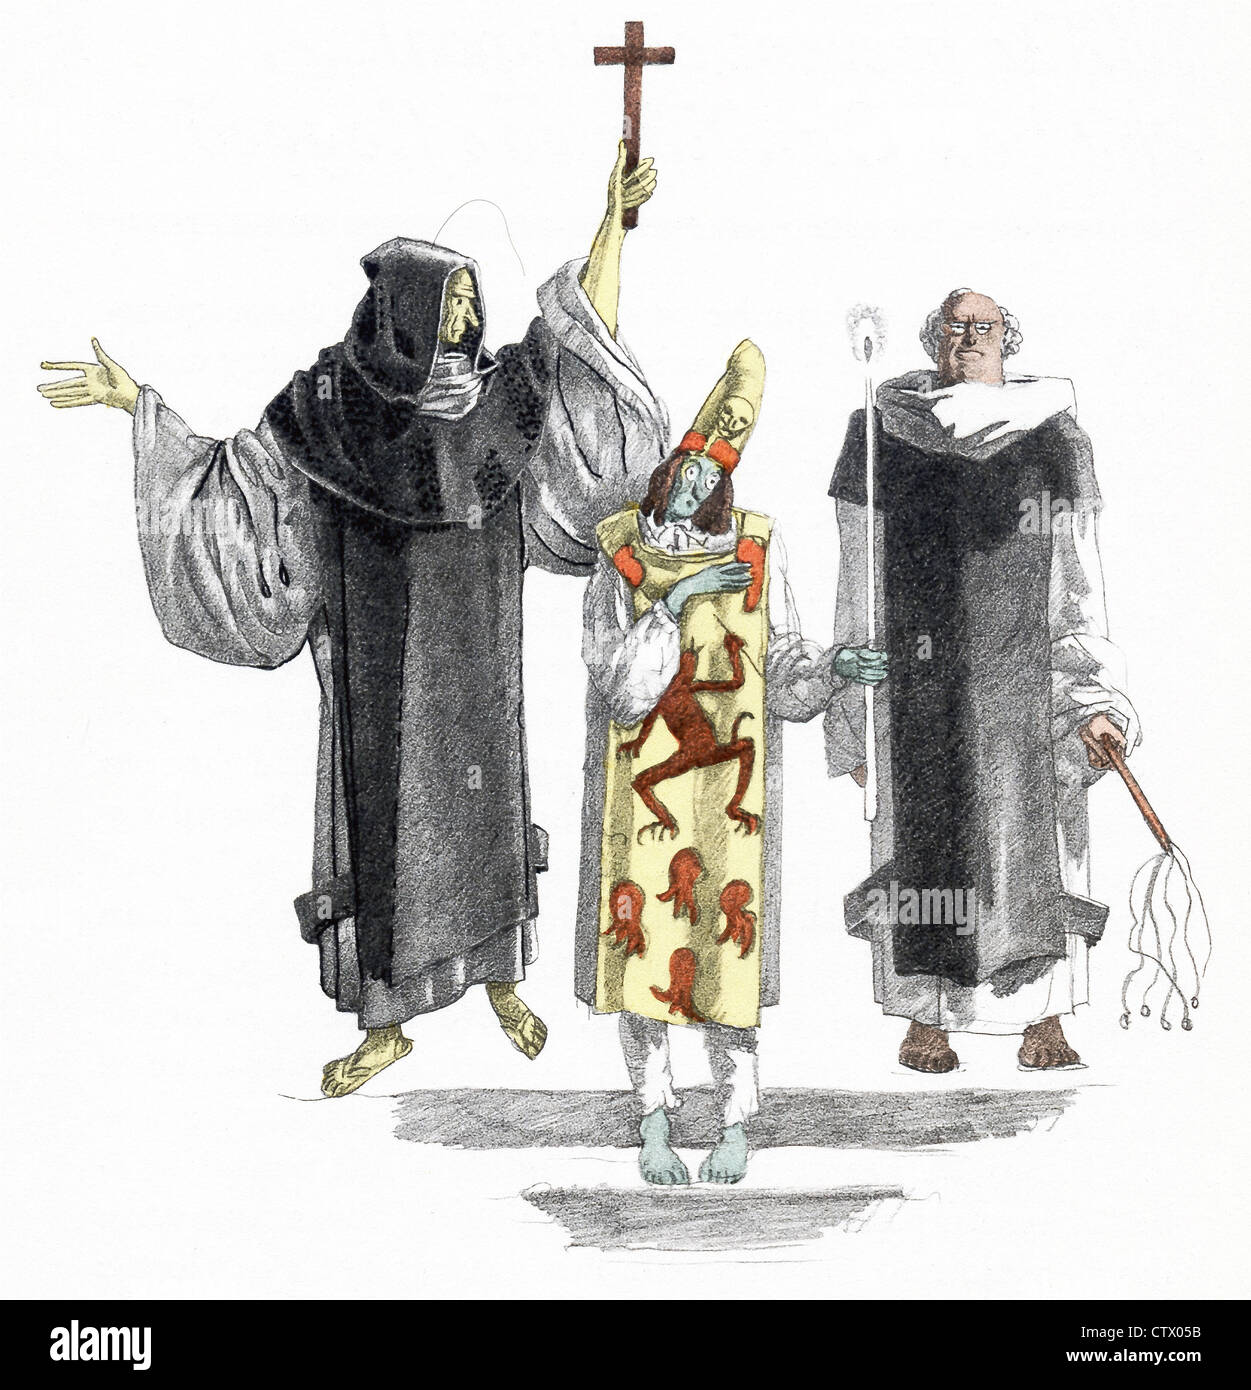 El personaje de la novela Candide está aquí como un hereje, con dos clérigos, como parte de Auto da fe en Lisboa. Foto de stock